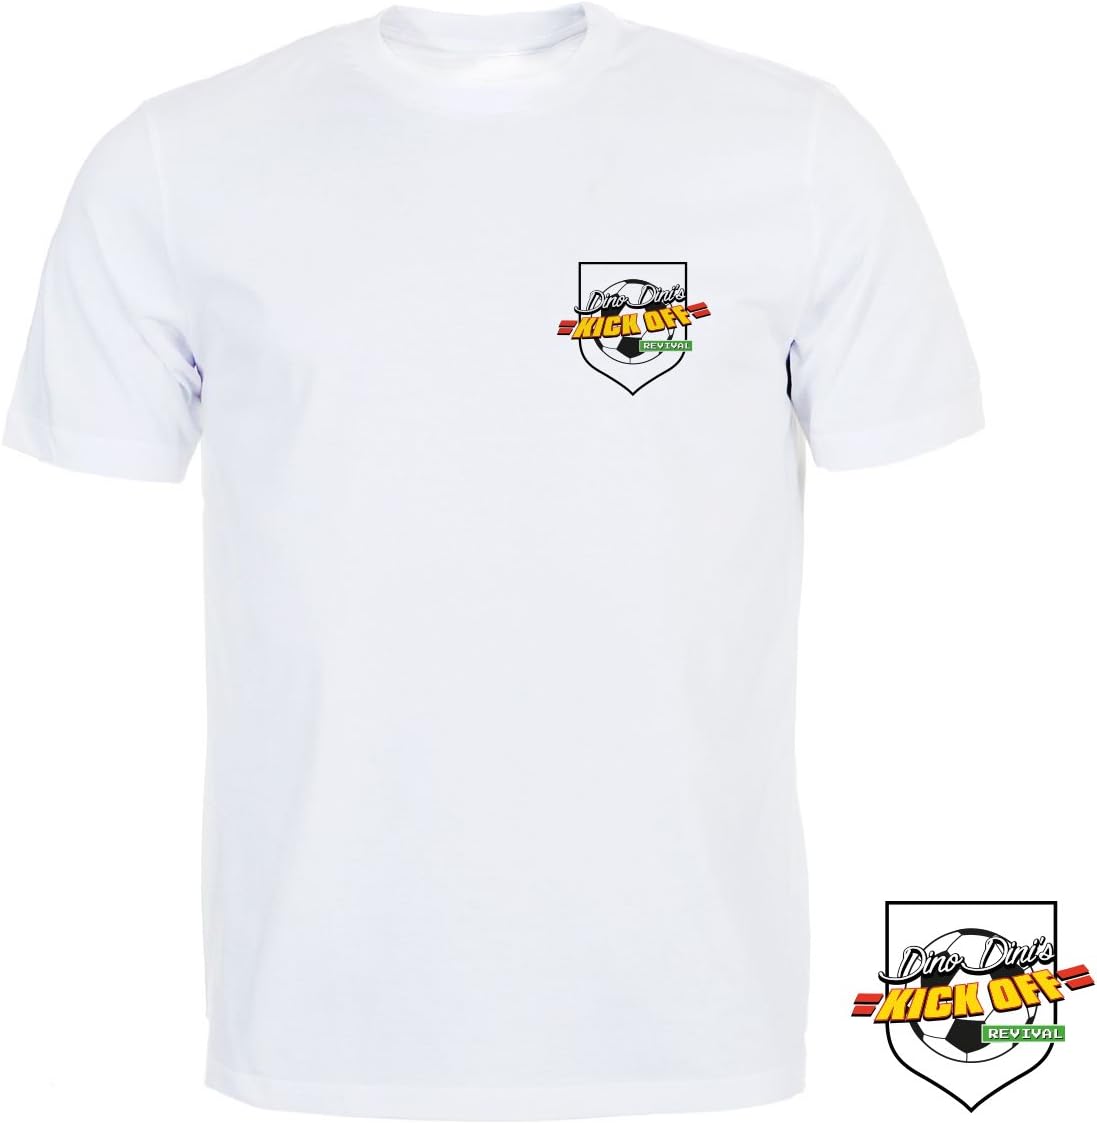 PS4 Dino Dini's Kick Off Revival + T-shirt Limited Edition - Usato Garantito Disponibilità immediata (copia) Avanquest